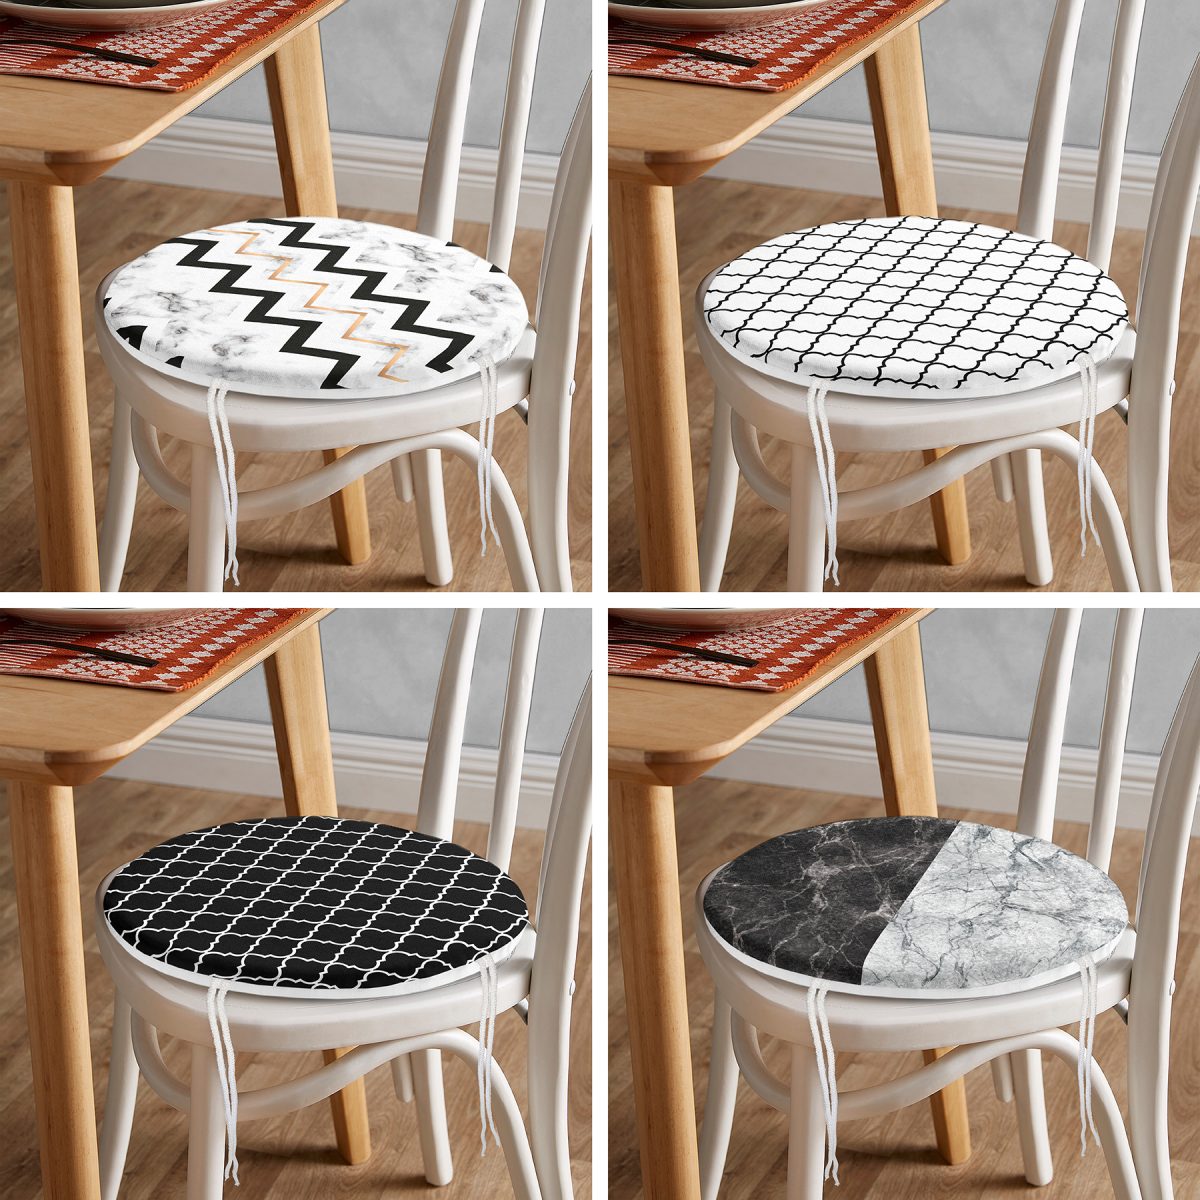 4'lü Mermer Tasarımlı Geometrik Motifli Yuvarlak Fermuarlı Sandalye Minderi Seti Realhomes